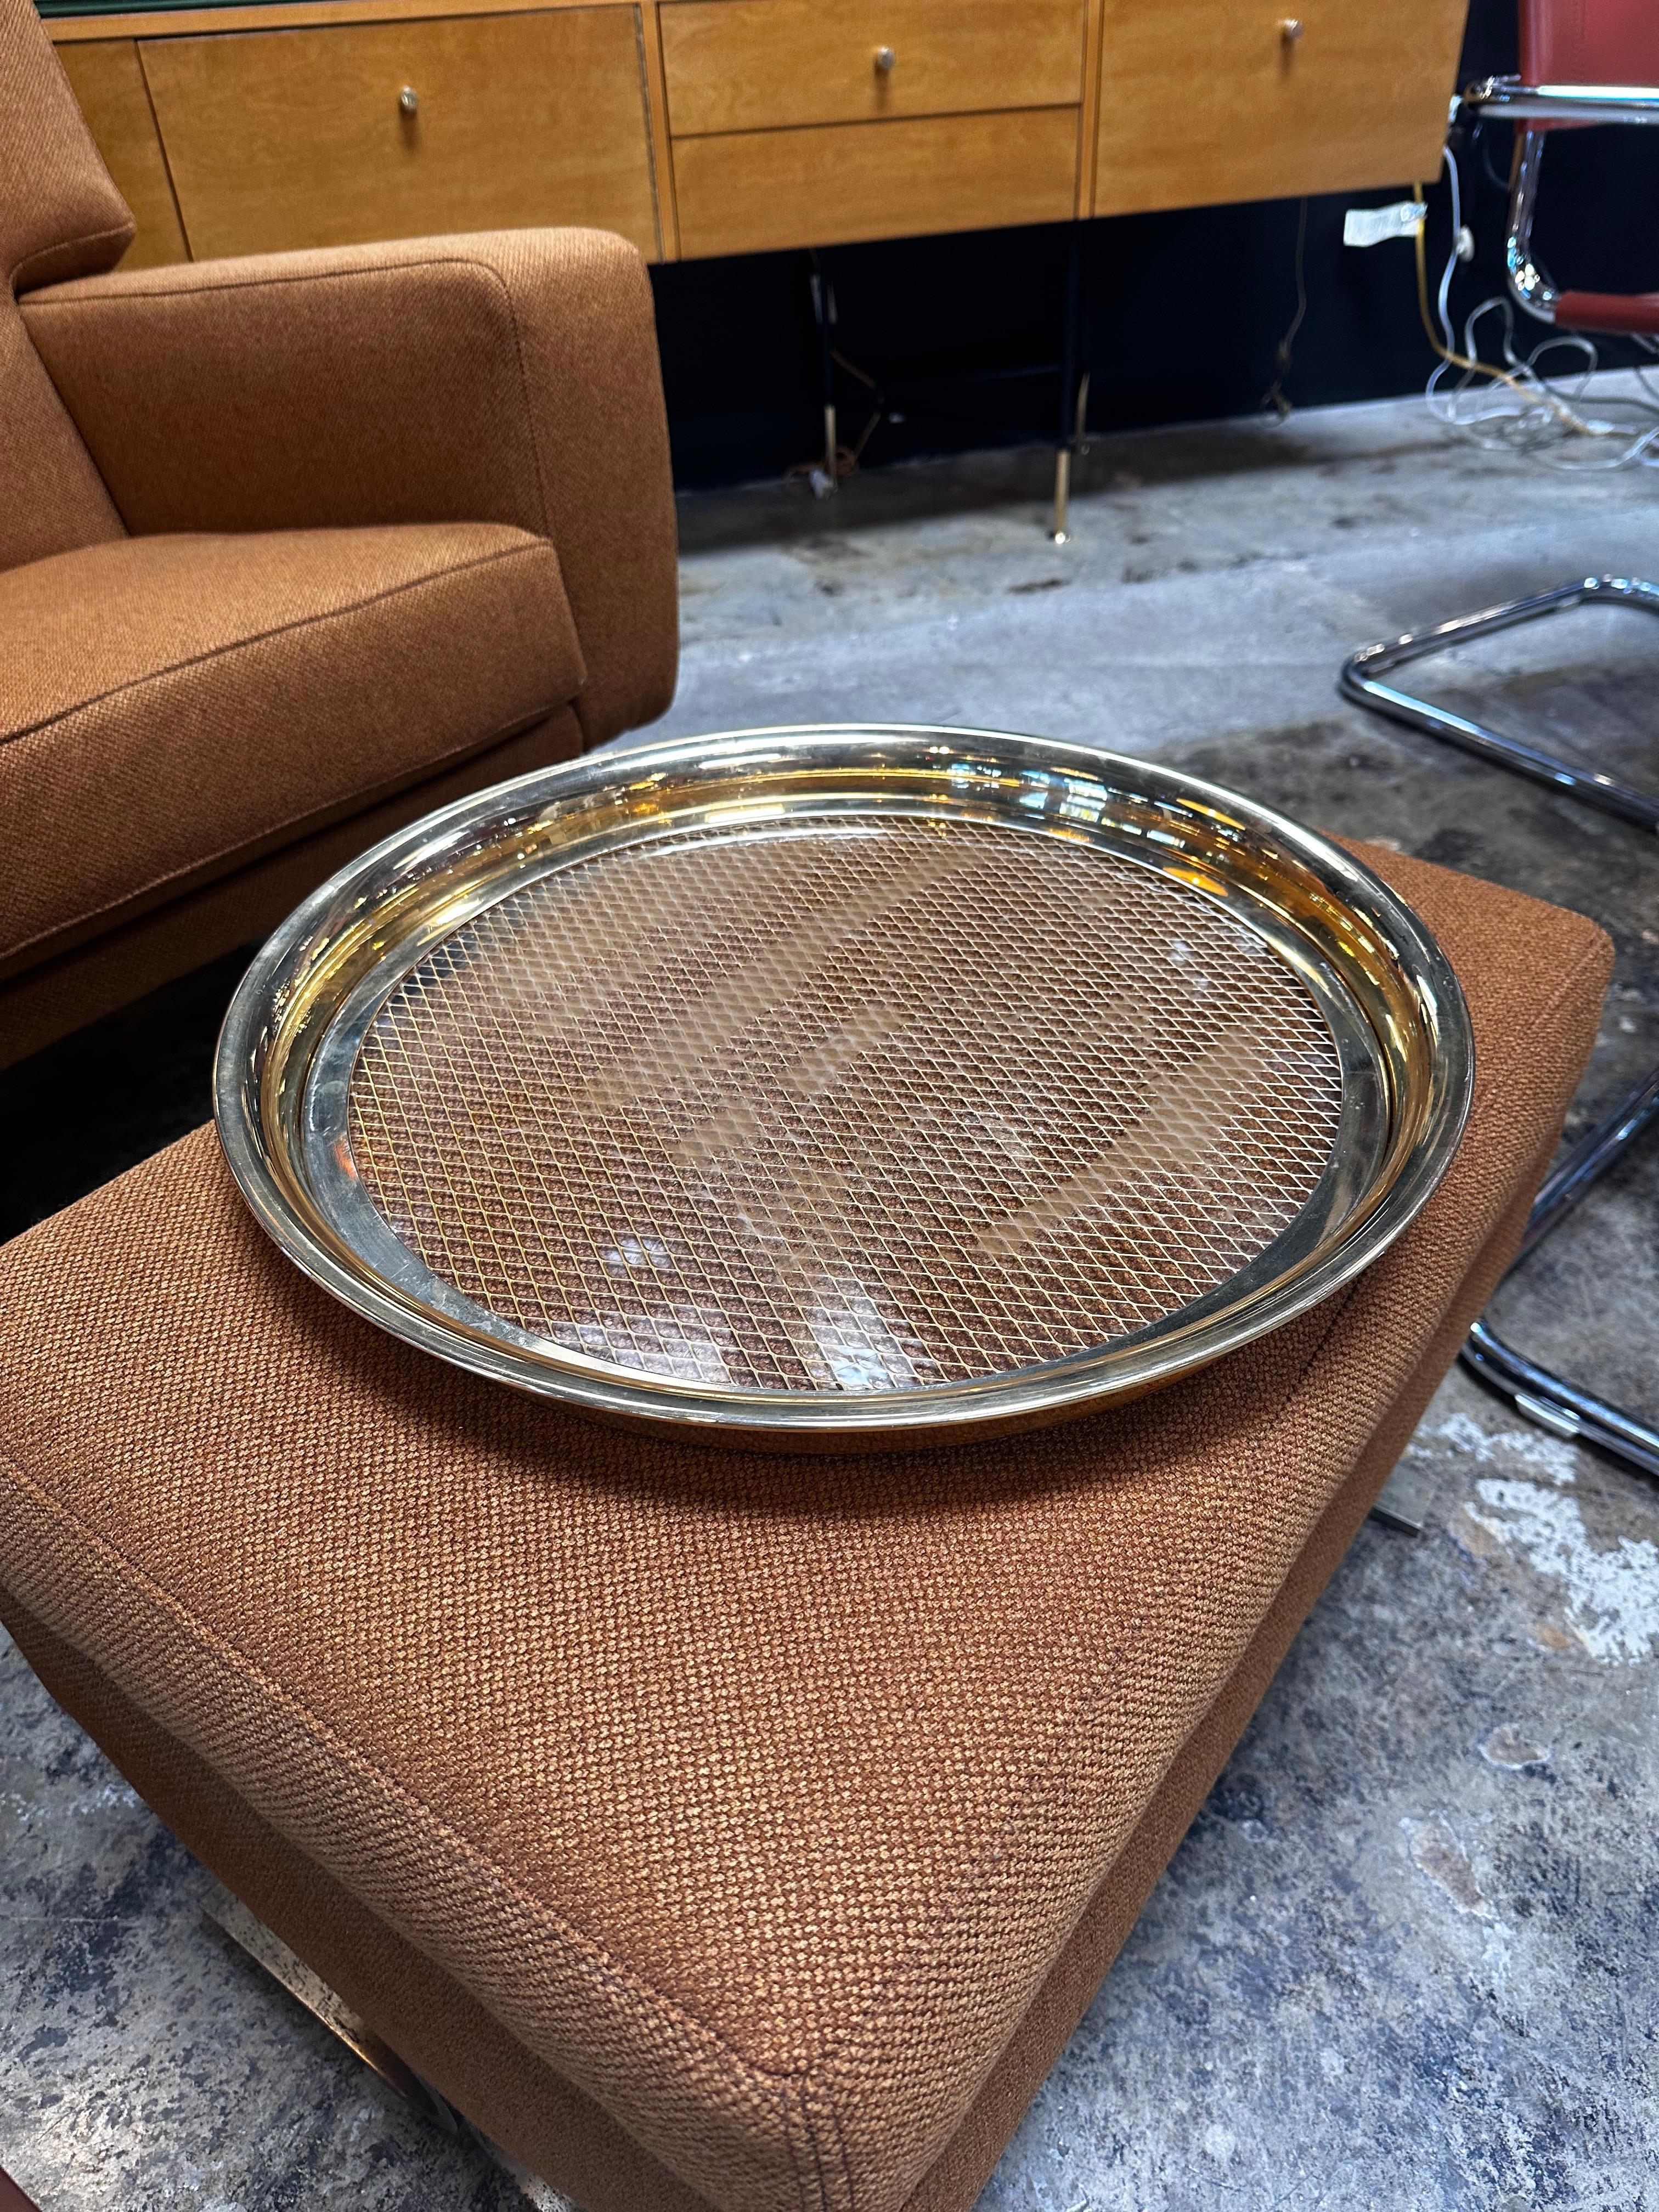 Das dekorative italienische runde Tablett aus Messing und Glas aus den 1980er Jahren ist eine beeindruckende Verschmelzung von Materialien und Design. Das runde Tablett zeichnet sich durch eine raffinierte Kombination aus Messing und Glas aus, die